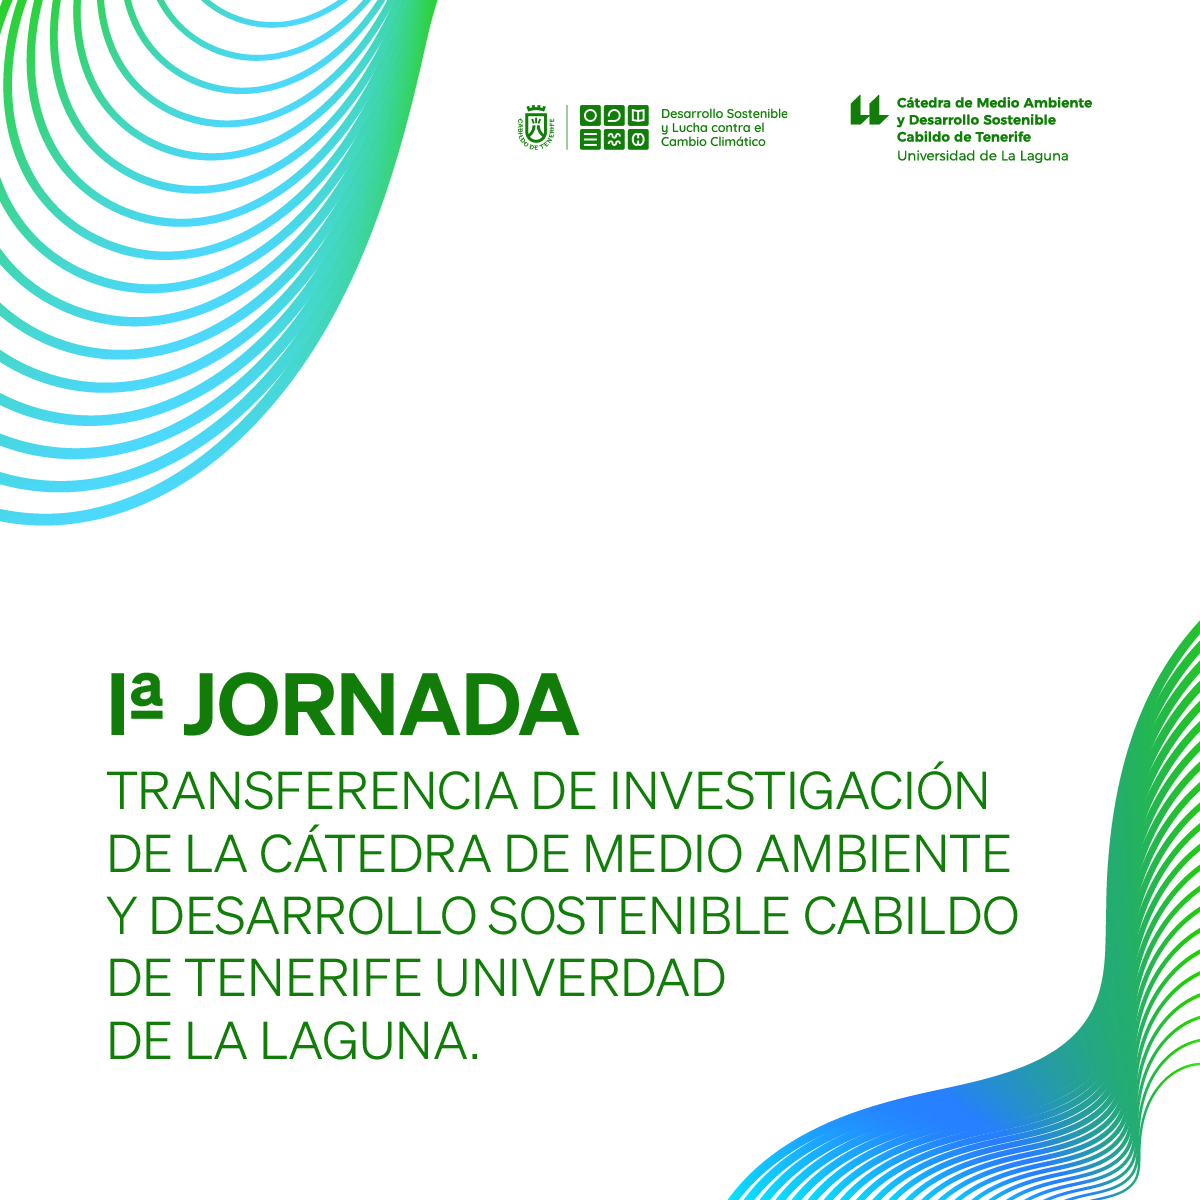 1ª Jornada Transferencia de Investigación de la Cátedra de Medio Ambiente y Desarrollo Sostenible